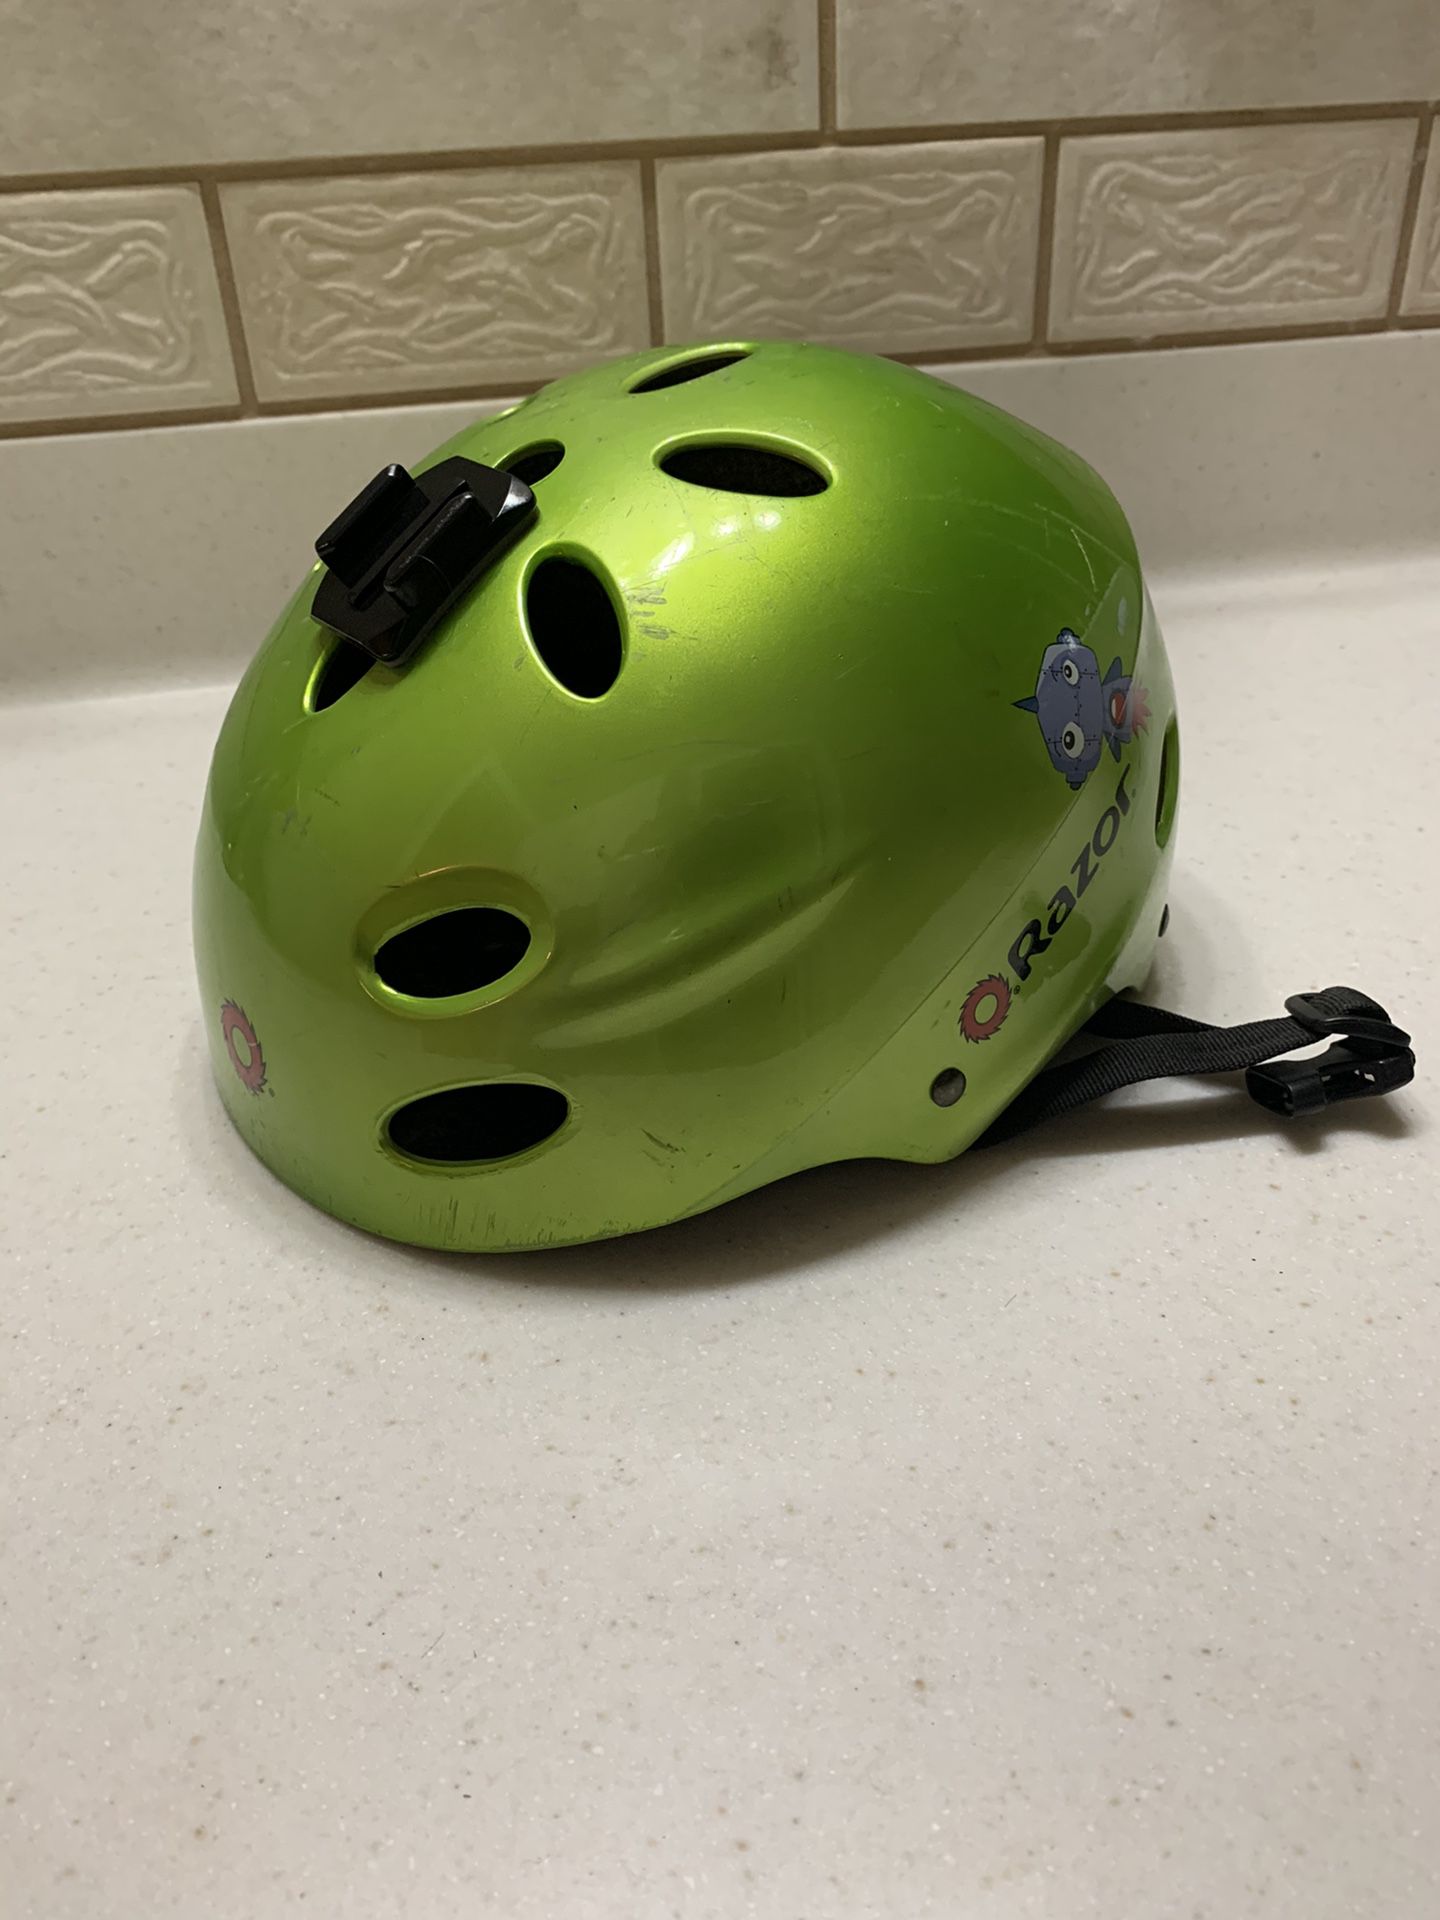 Razor helmet/ bike helmet